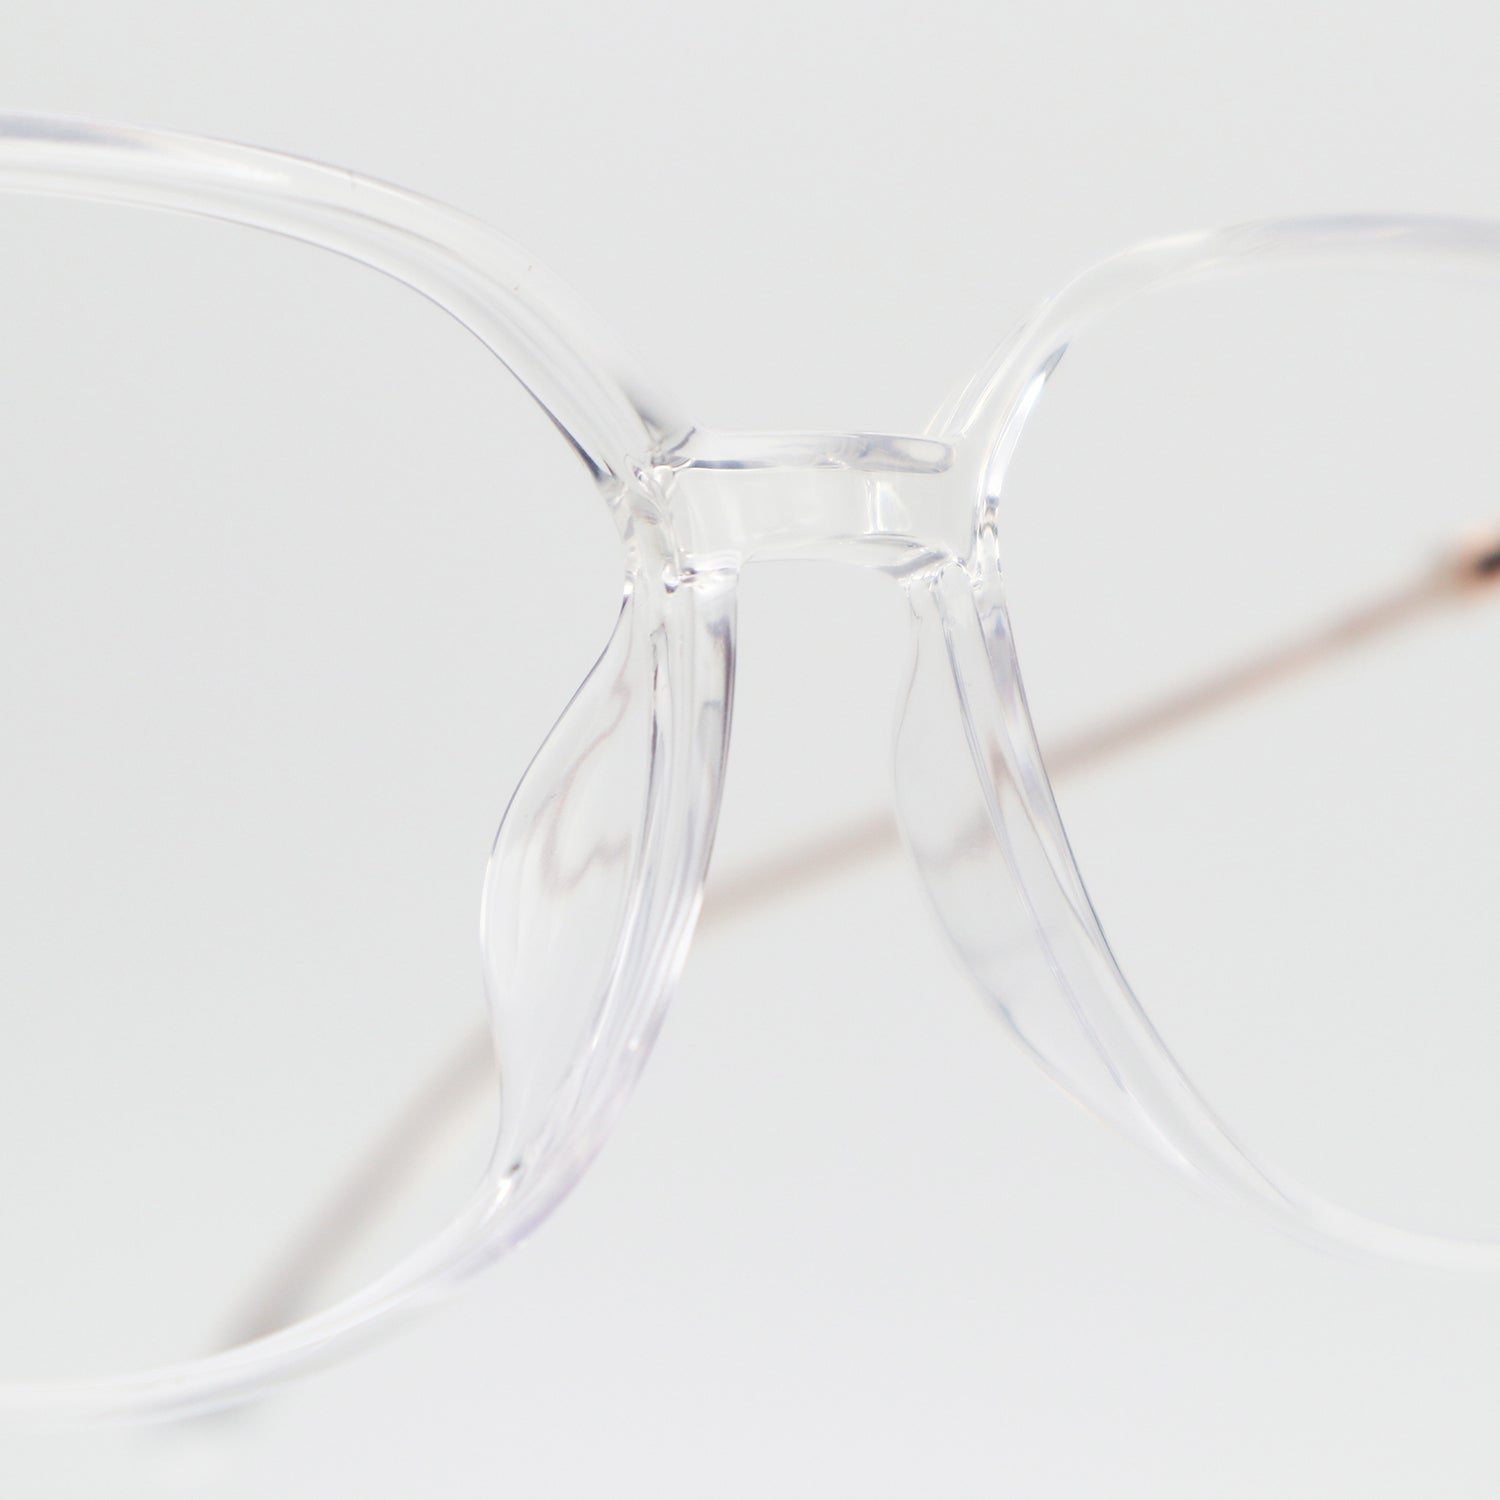 Bertha - Eyeglasses | ELKLOOK